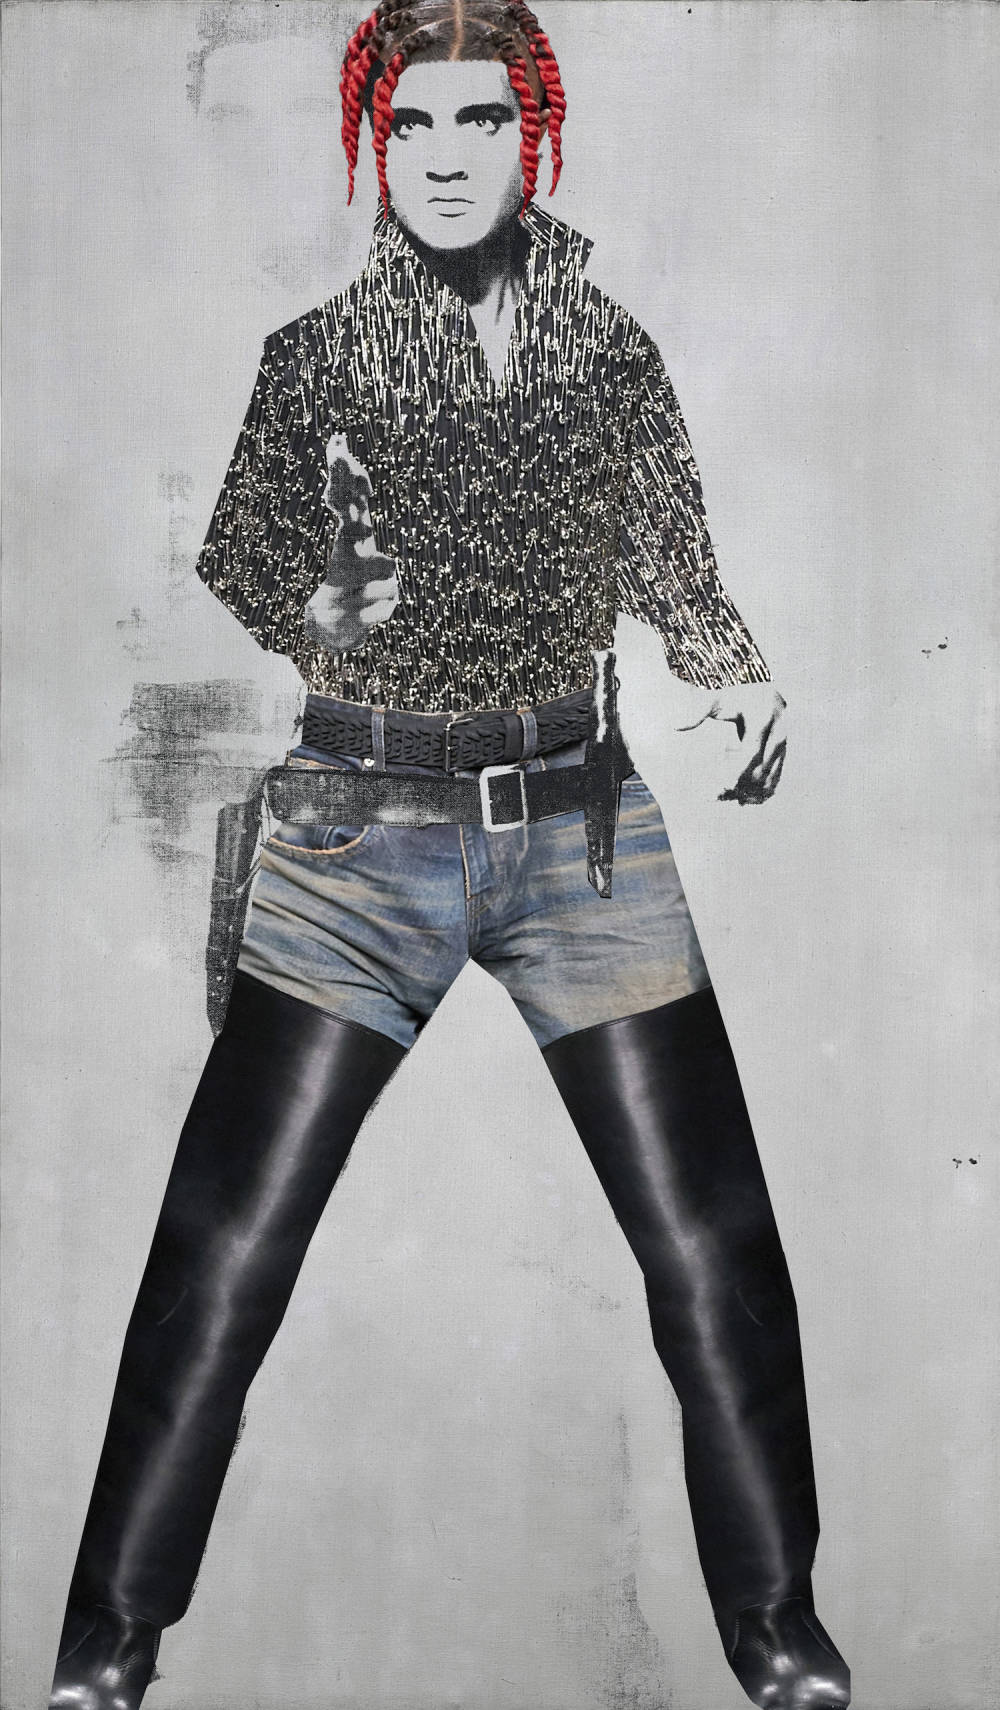  Andy Warhol, Double Elvis (in Balenciaga), 1963 